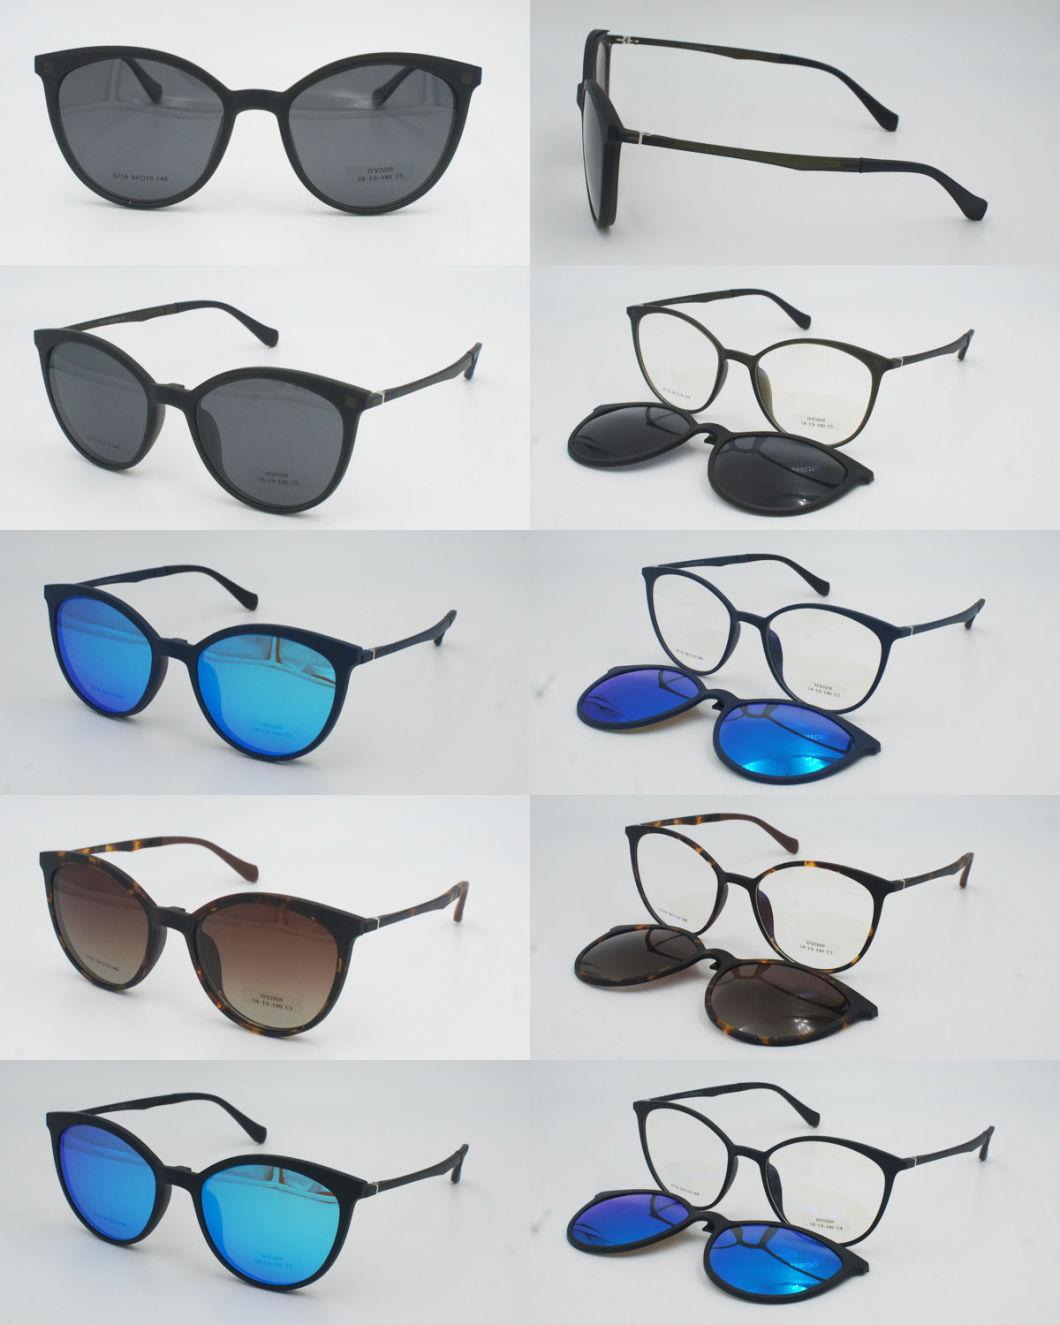 2020 New Model Magnetic Multicolor Lens Clip-on Frame Tortoiseshell Sunglasses Magnet for Men